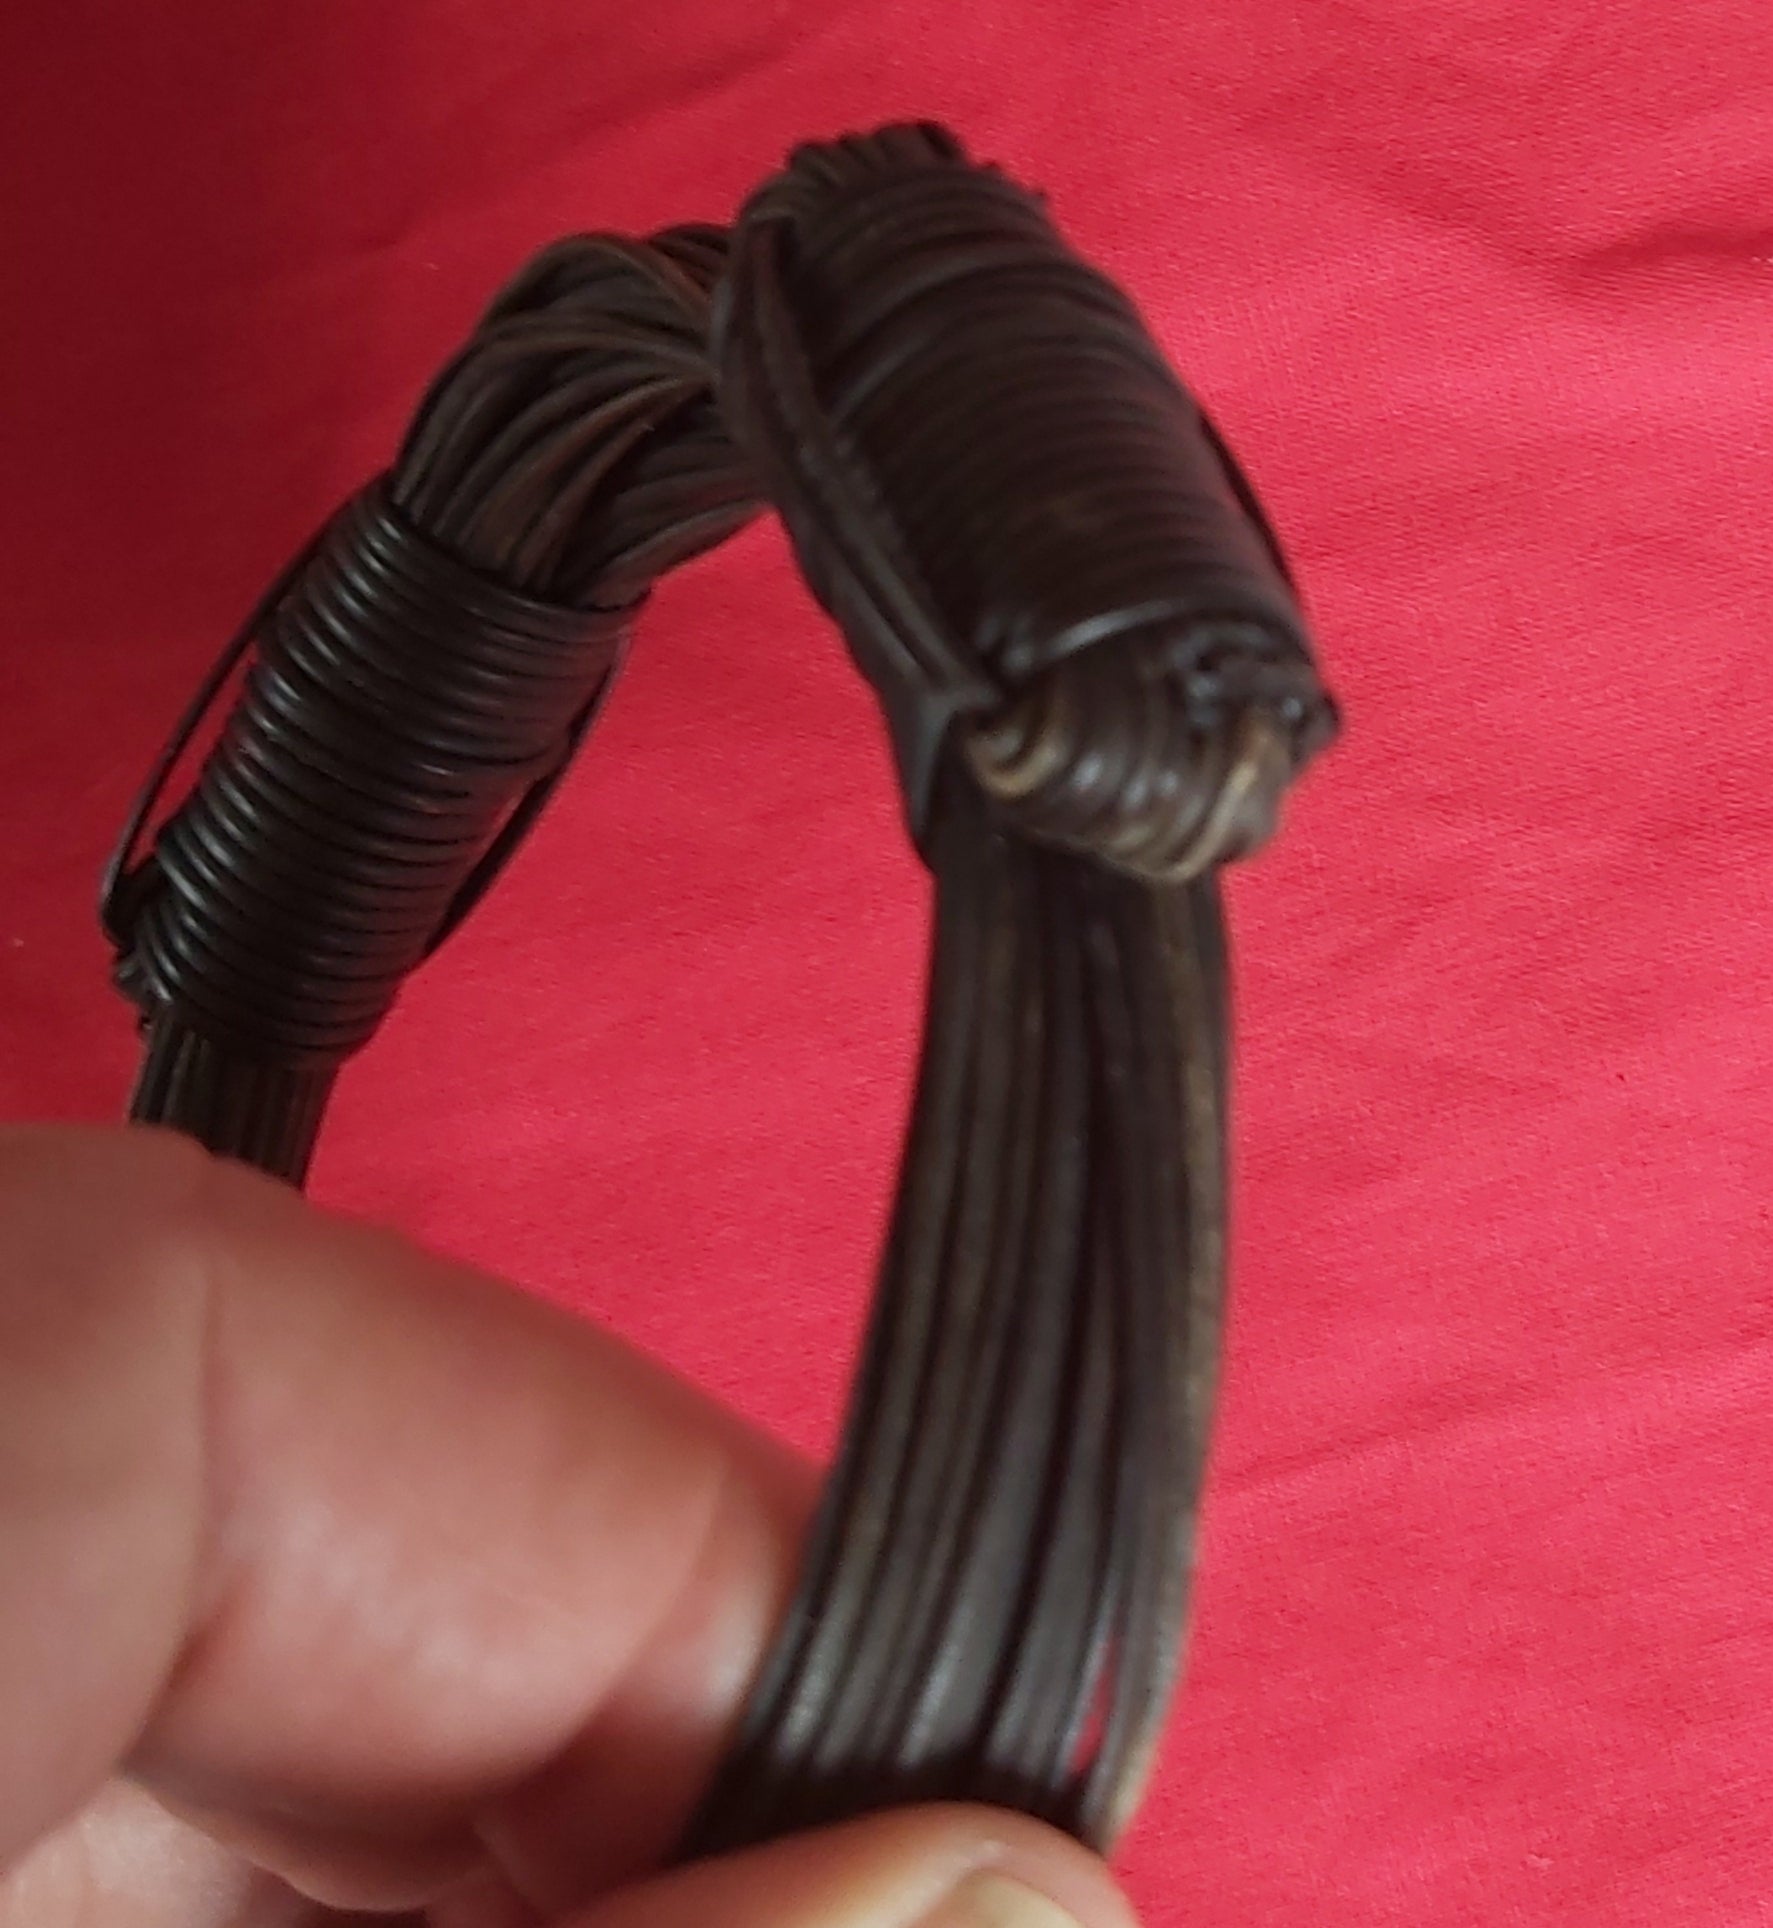 VB7 2 Knot very bulky elephant hair bracelet 3.5" max. Diameter